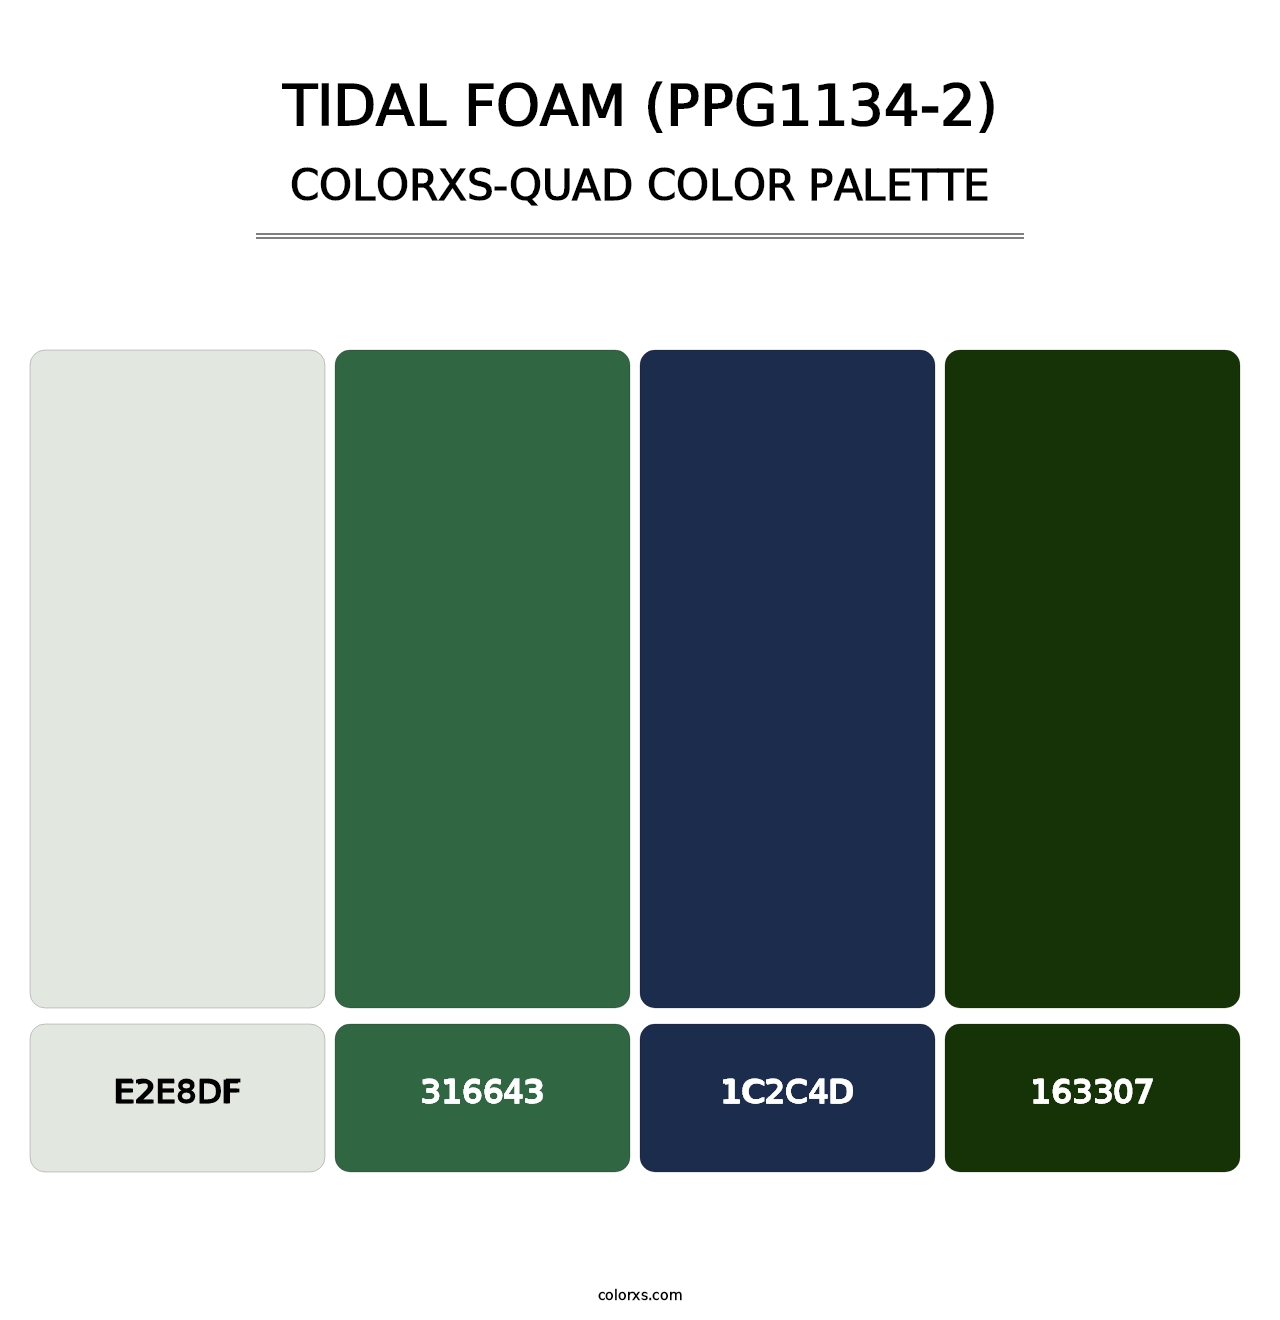 Tidal Foam (PPG1134-2) - Colorxs Quad Palette